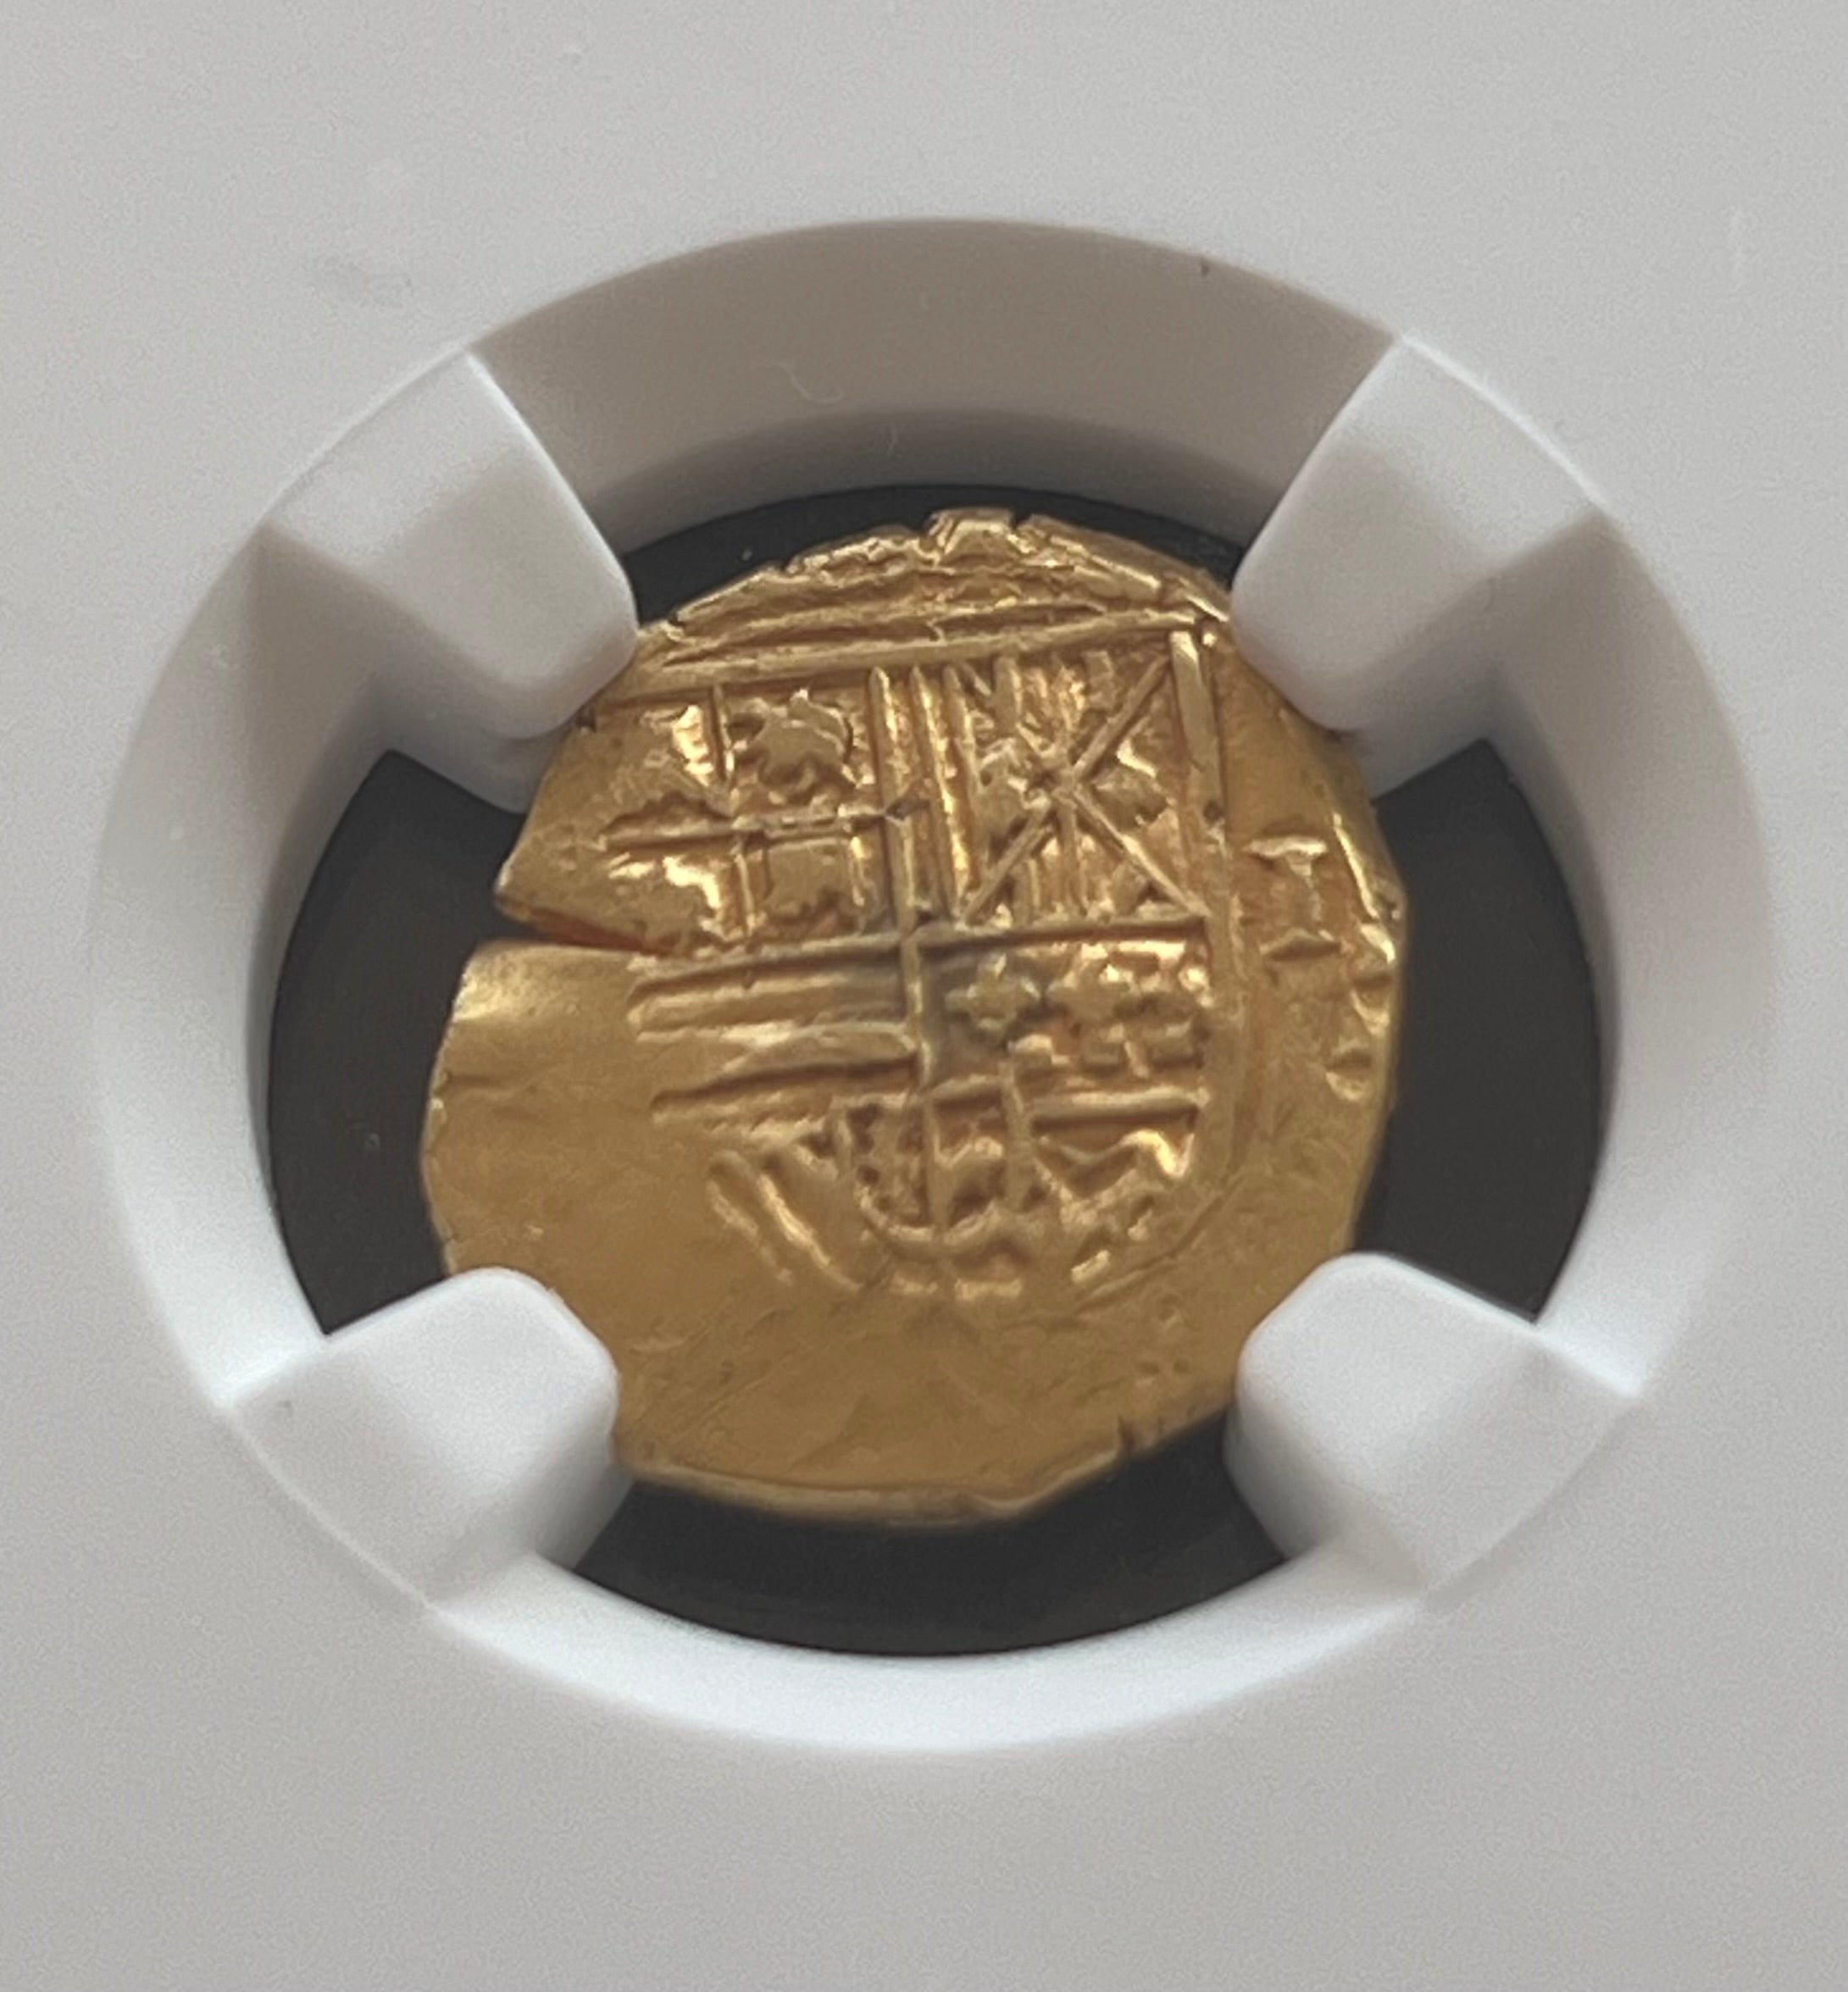 1 Escudo Seville, Spain Gold coin NGC Grade AU Details (1598-1621)